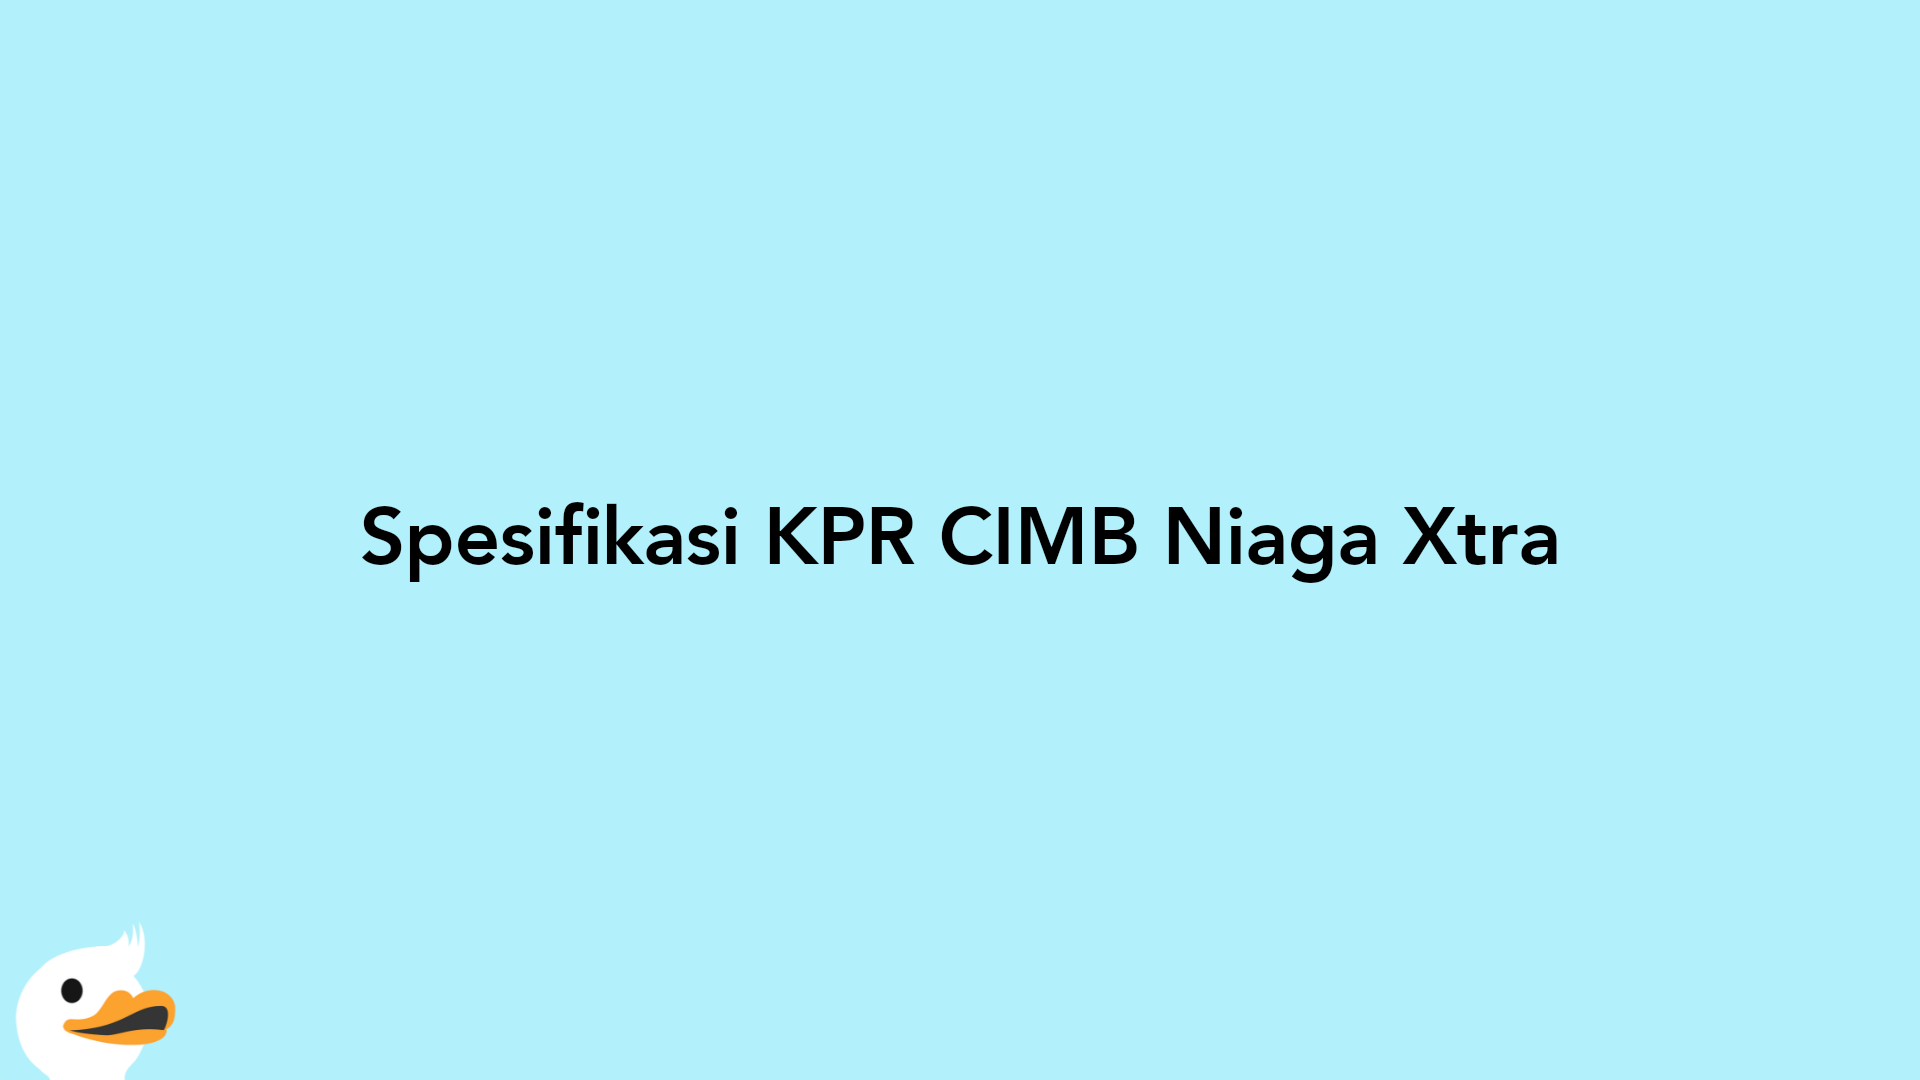 Spesifikasi KPR CIMB Niaga Xtra